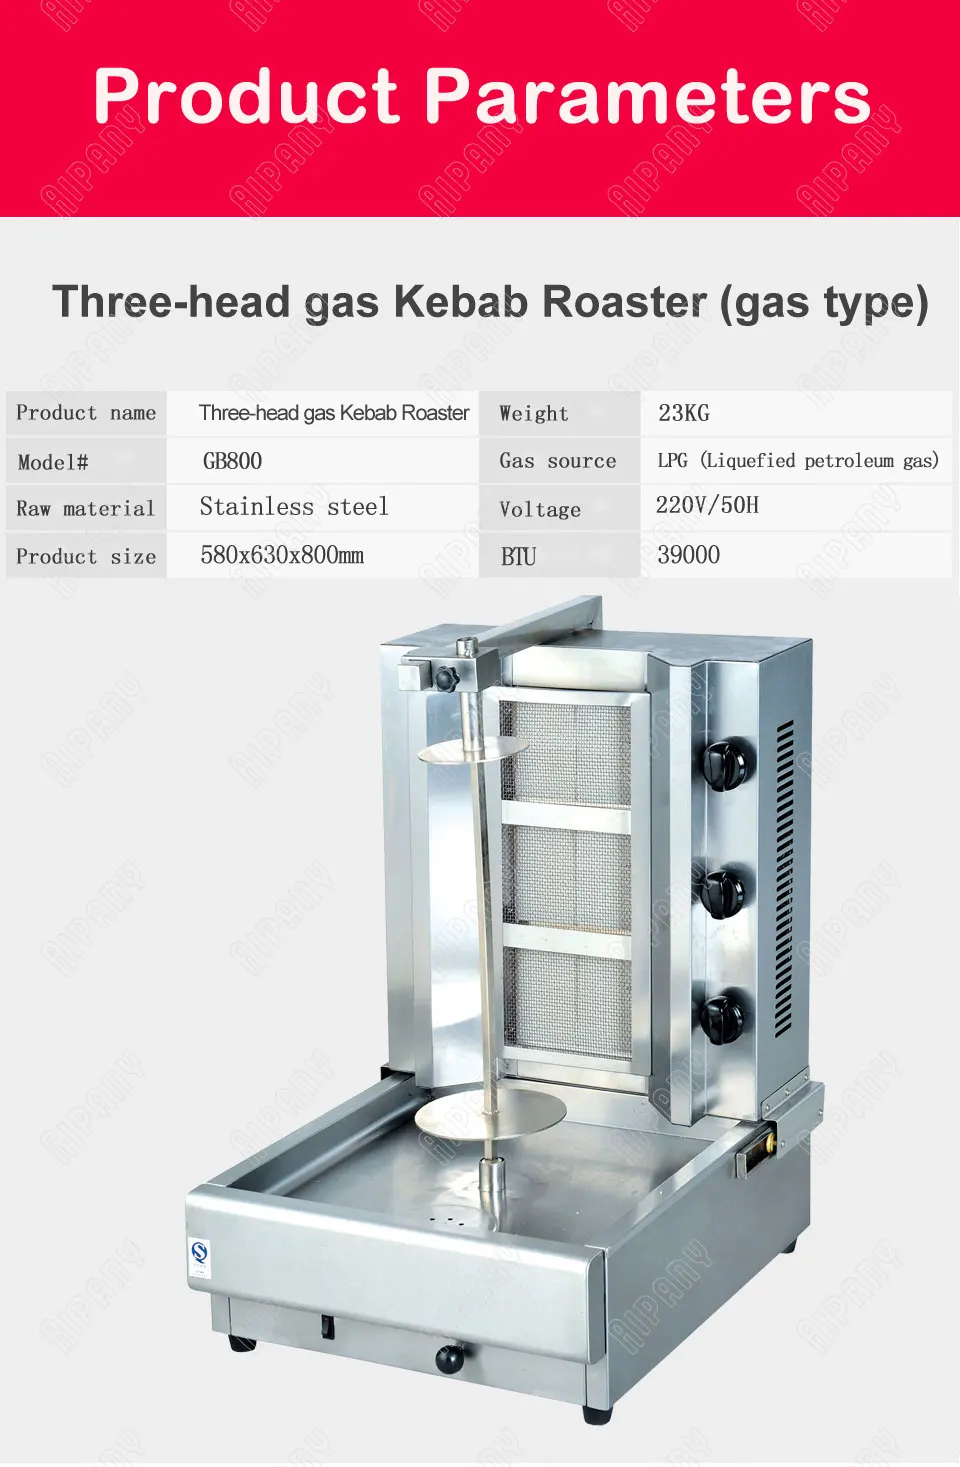 EB808/GB800/GB950 электрическая газовая жаровня для кебаба из нержавеющей стали, вертикальная жаровня для шашлыка, барбекю, шаурма, гриль, машина для жарки